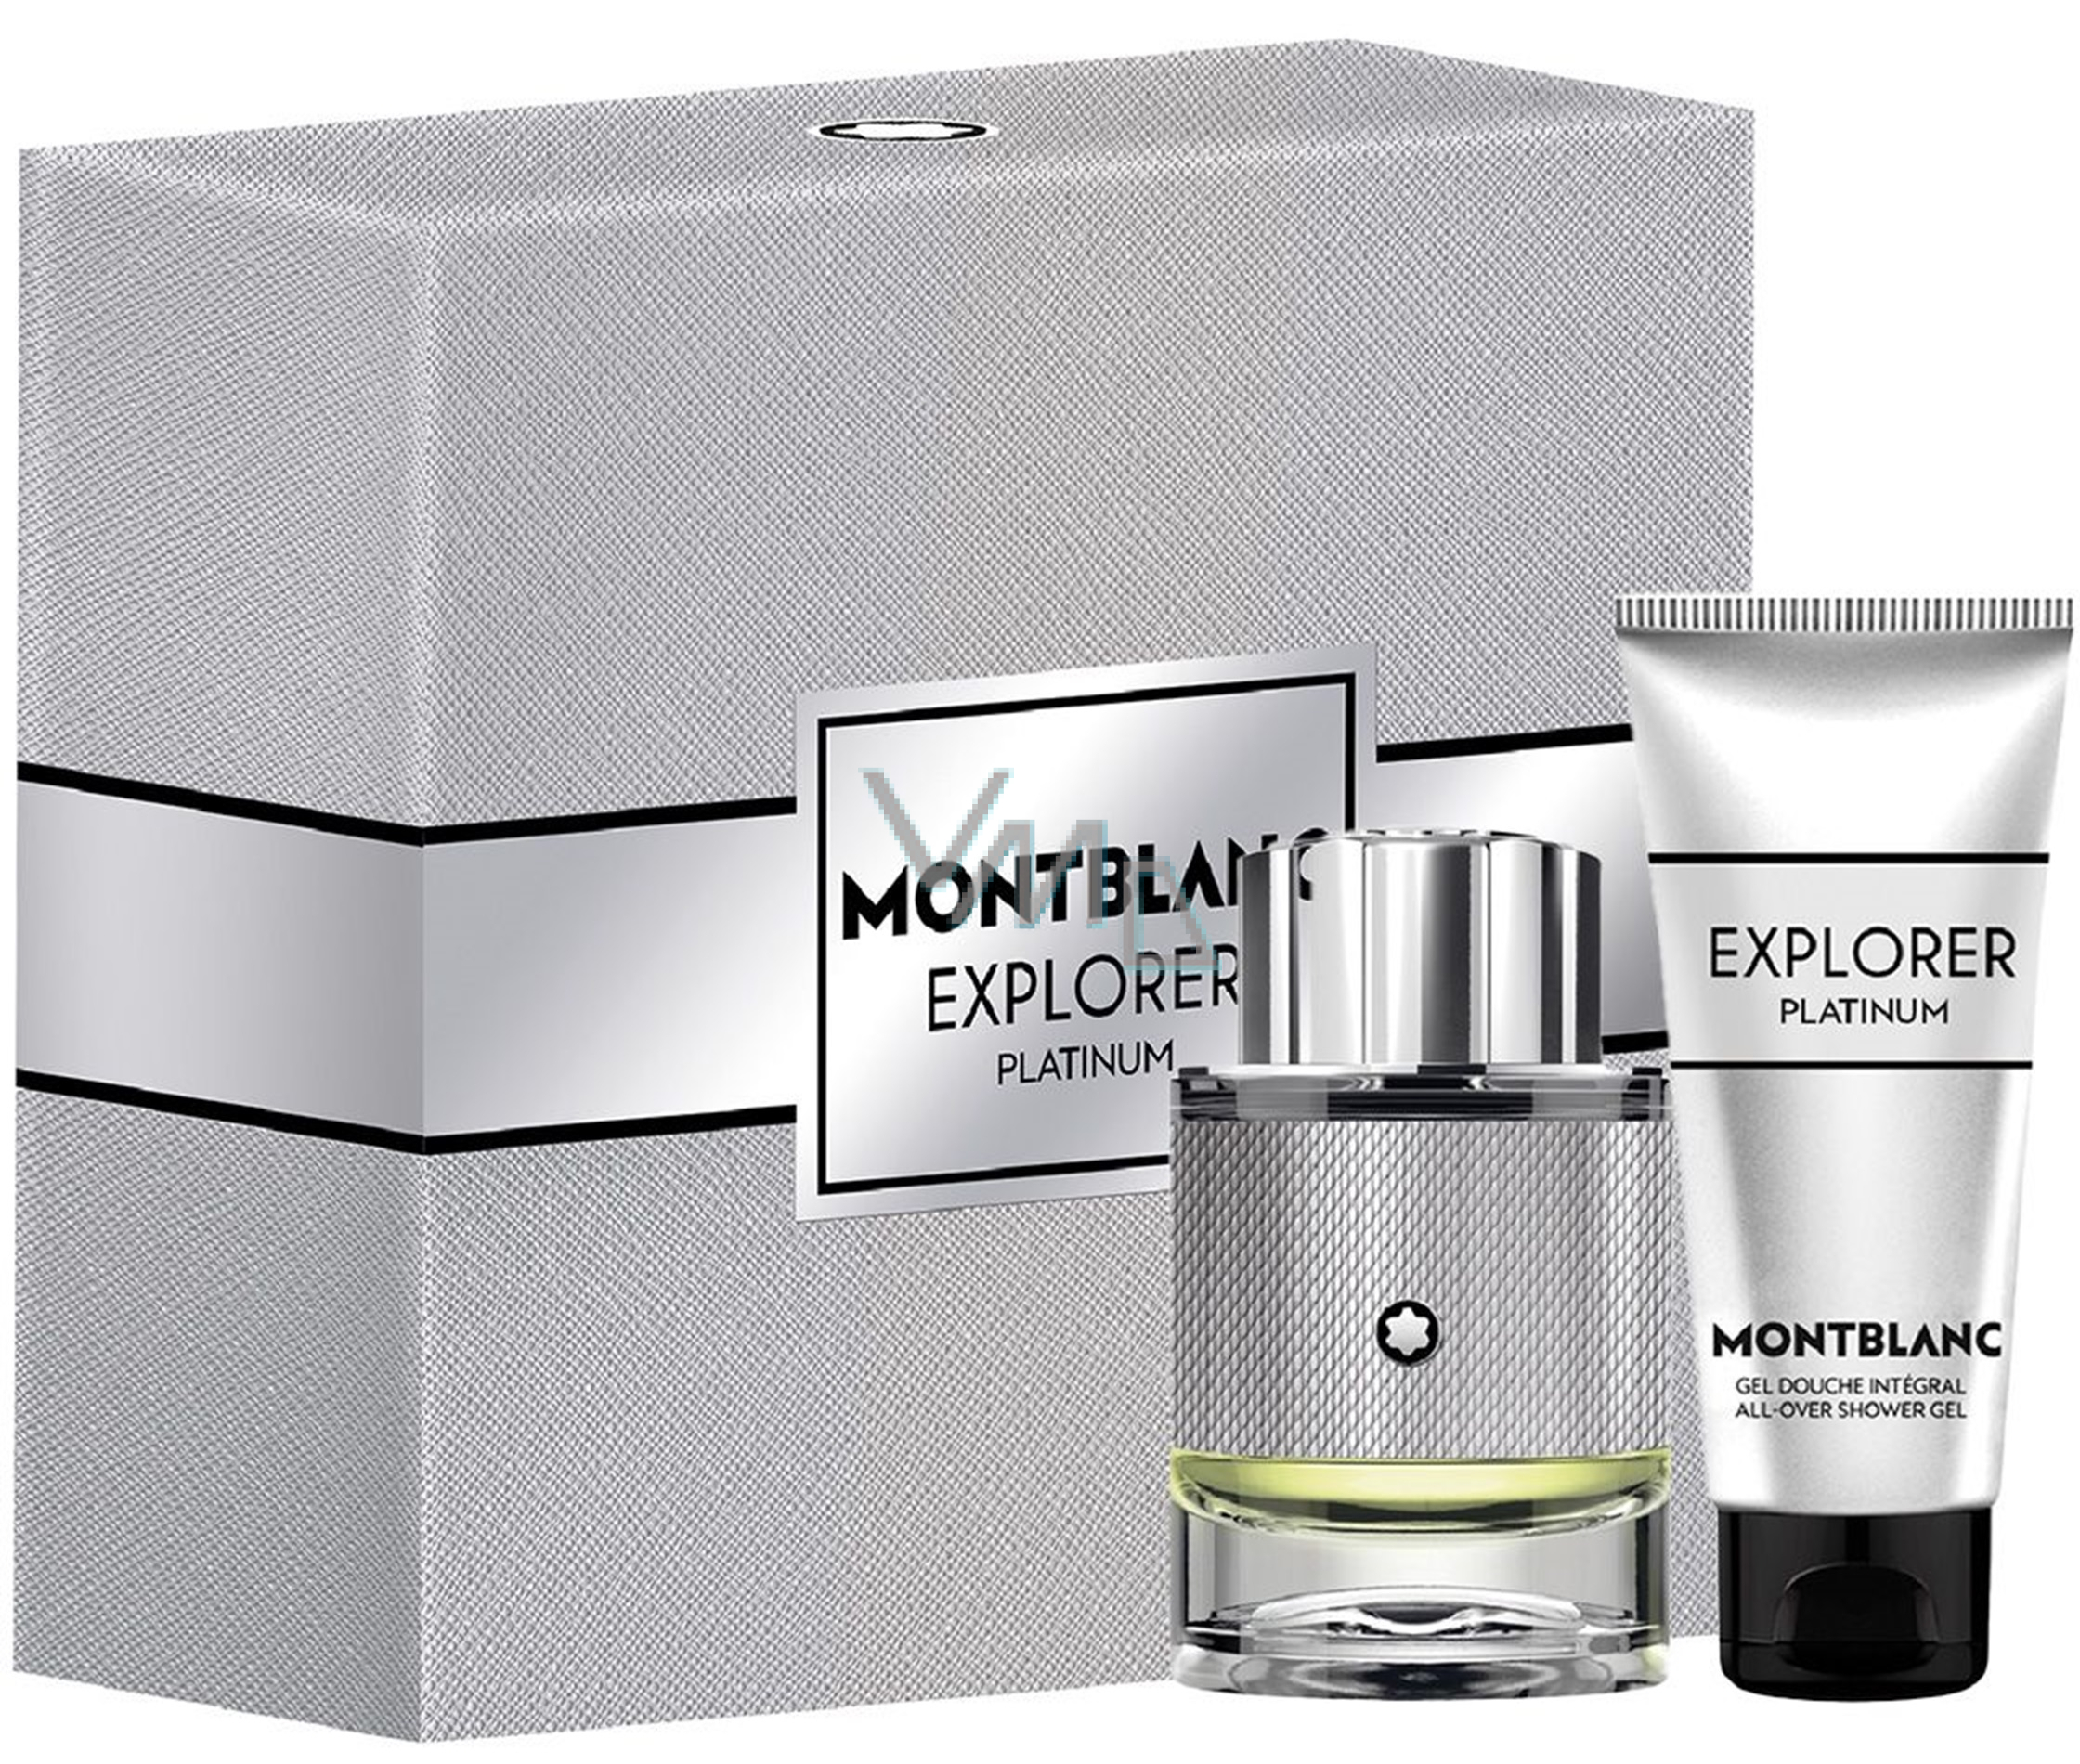 Montblanc Explorer Platinum eau de parfum 60 ml + shower gel 100 ml, gift  set for men - VMD parfumerie - drogerie